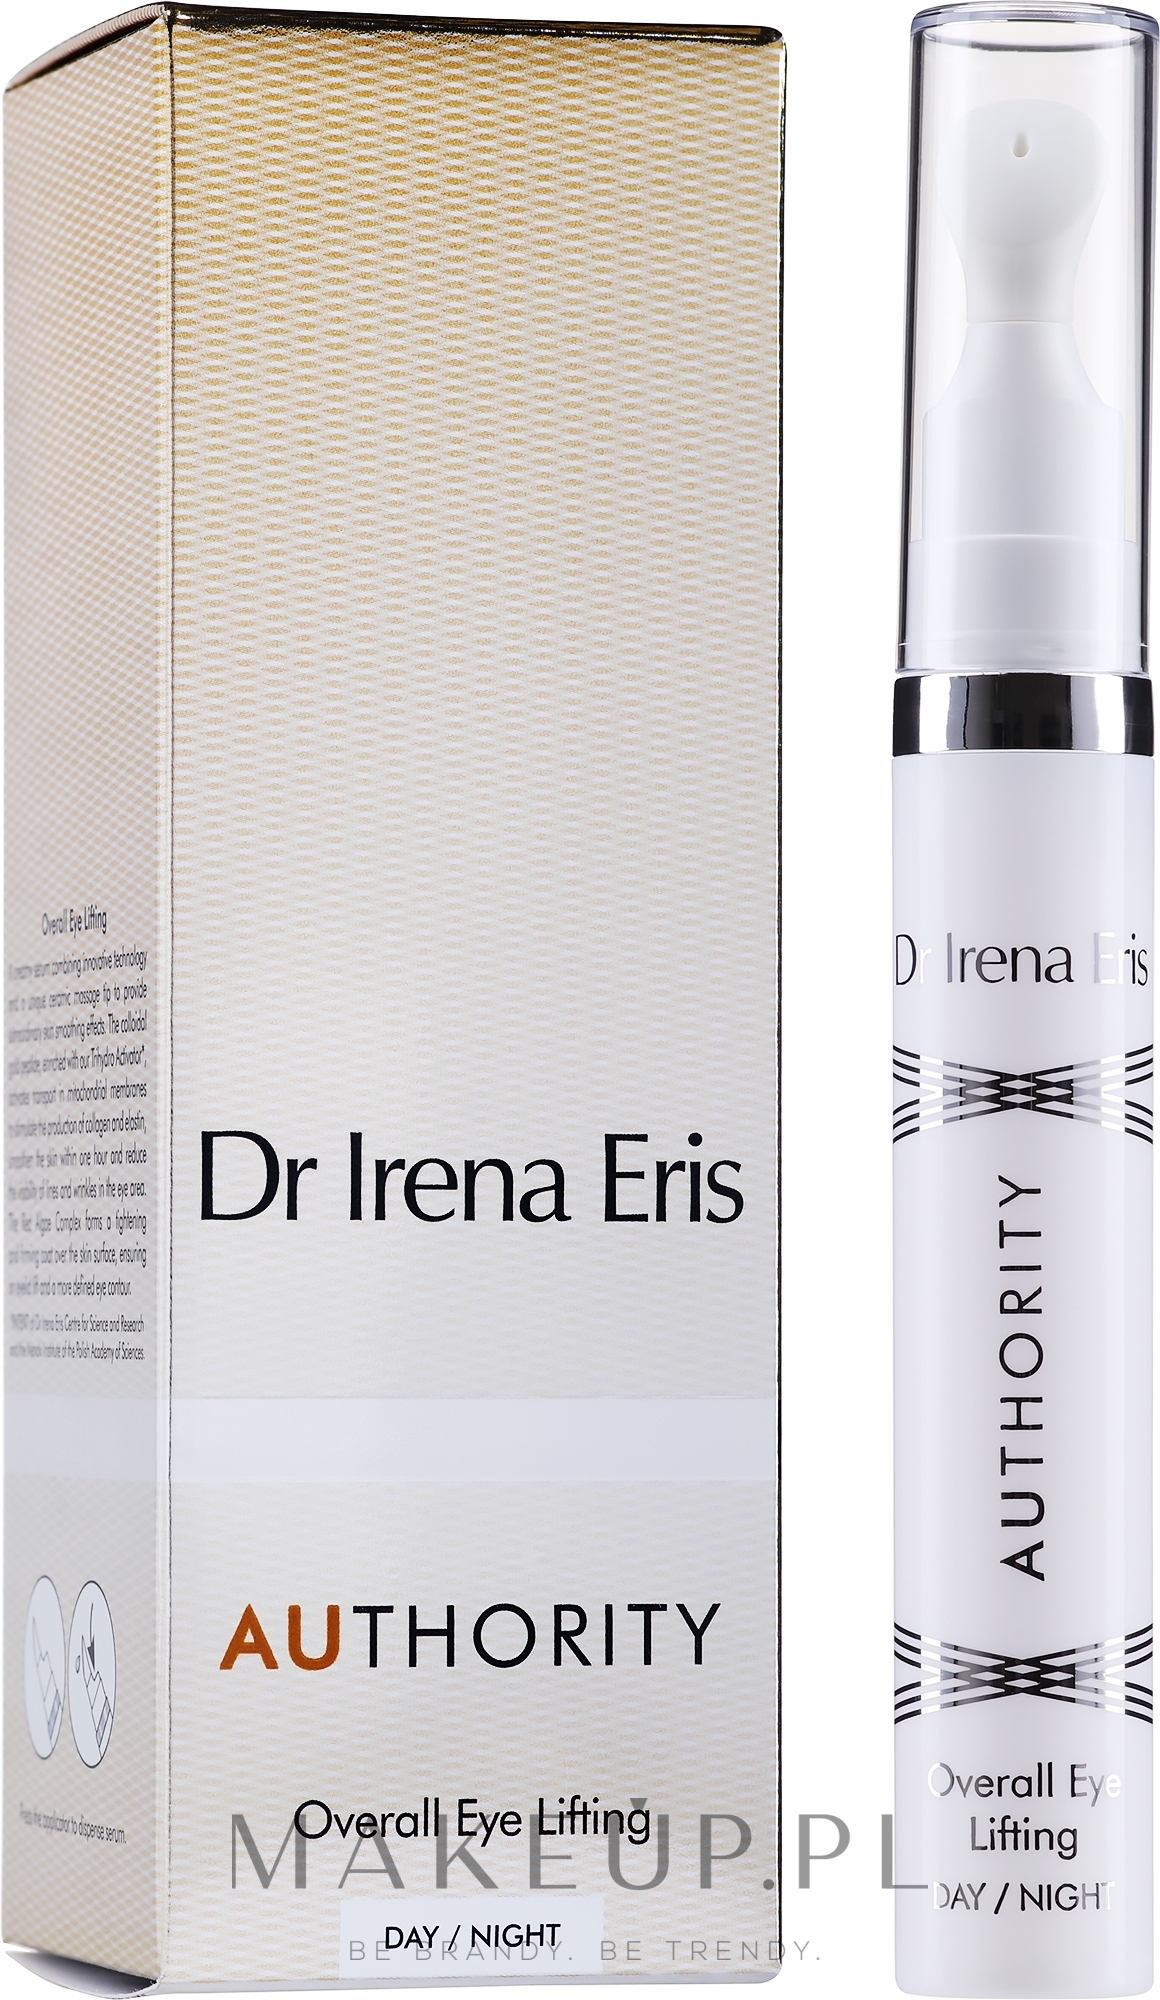 Liftingujący serum do okolic oczu na dzień i noc - Dr Irena Eris Authority Overall Eye Lifting — Zdjęcie 15 ml